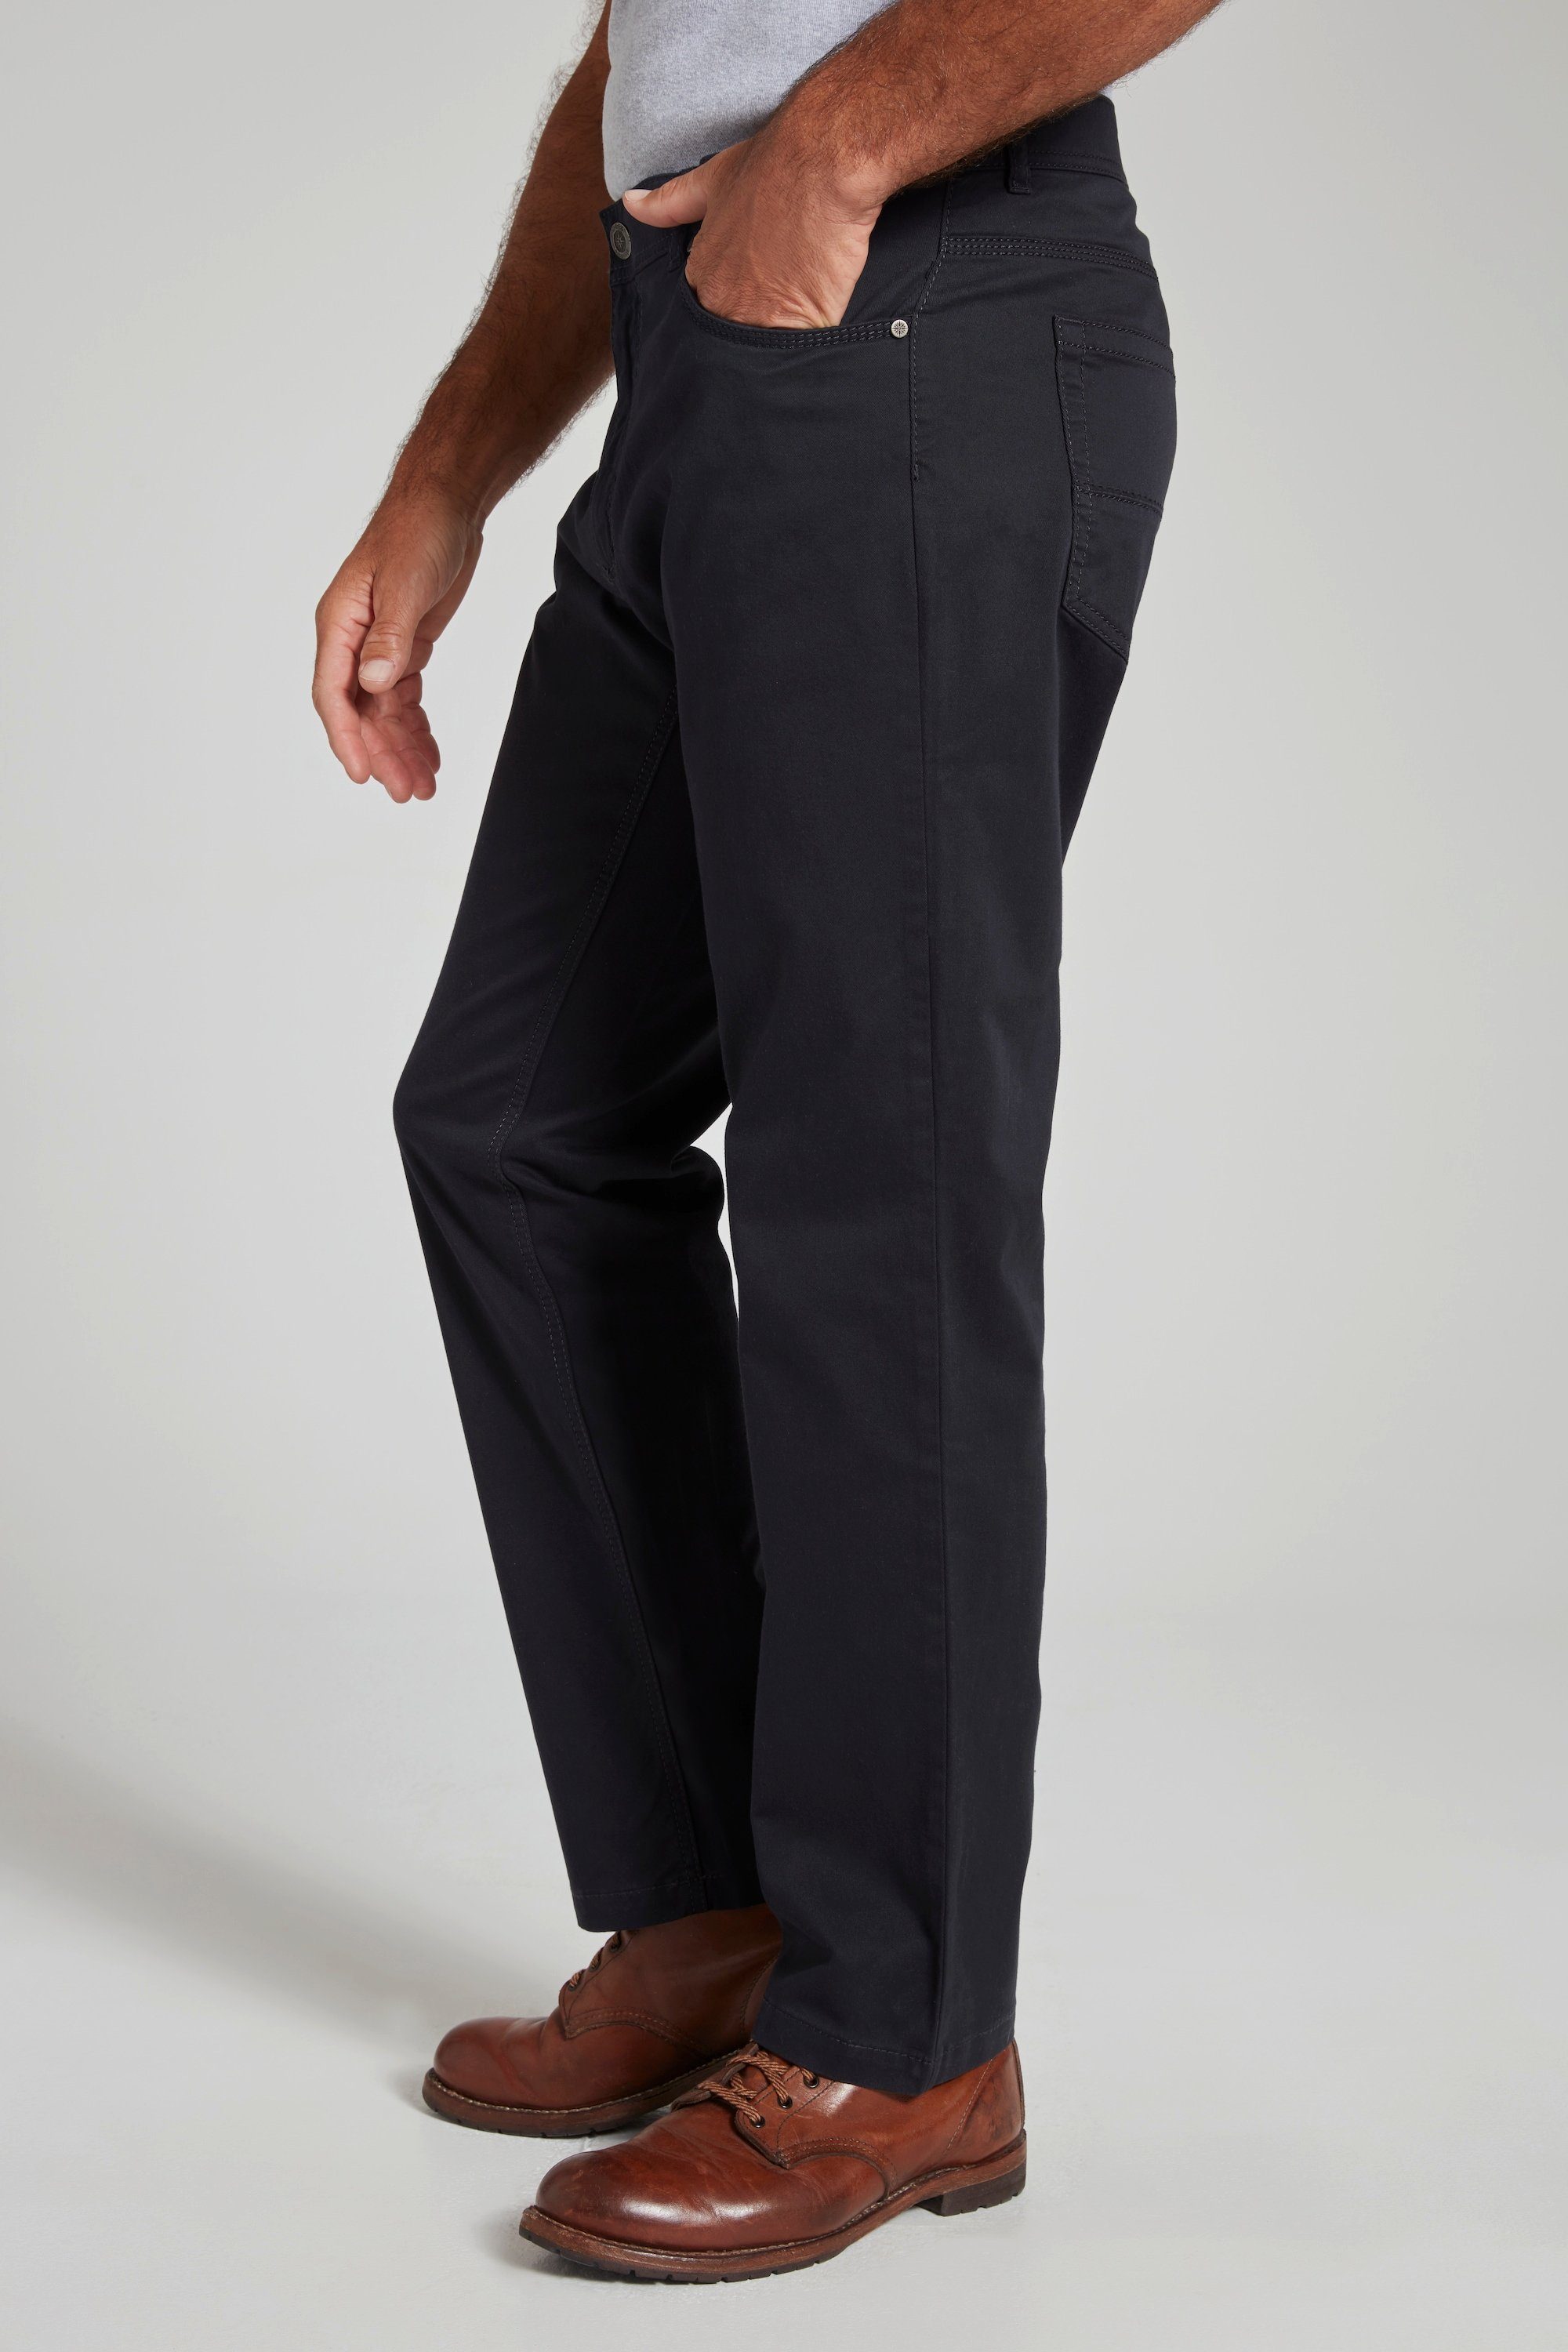 Bund Regular dunkel 5-Pocket-Jeans JP1880 5-Pocket Hose marine Fit elastischer